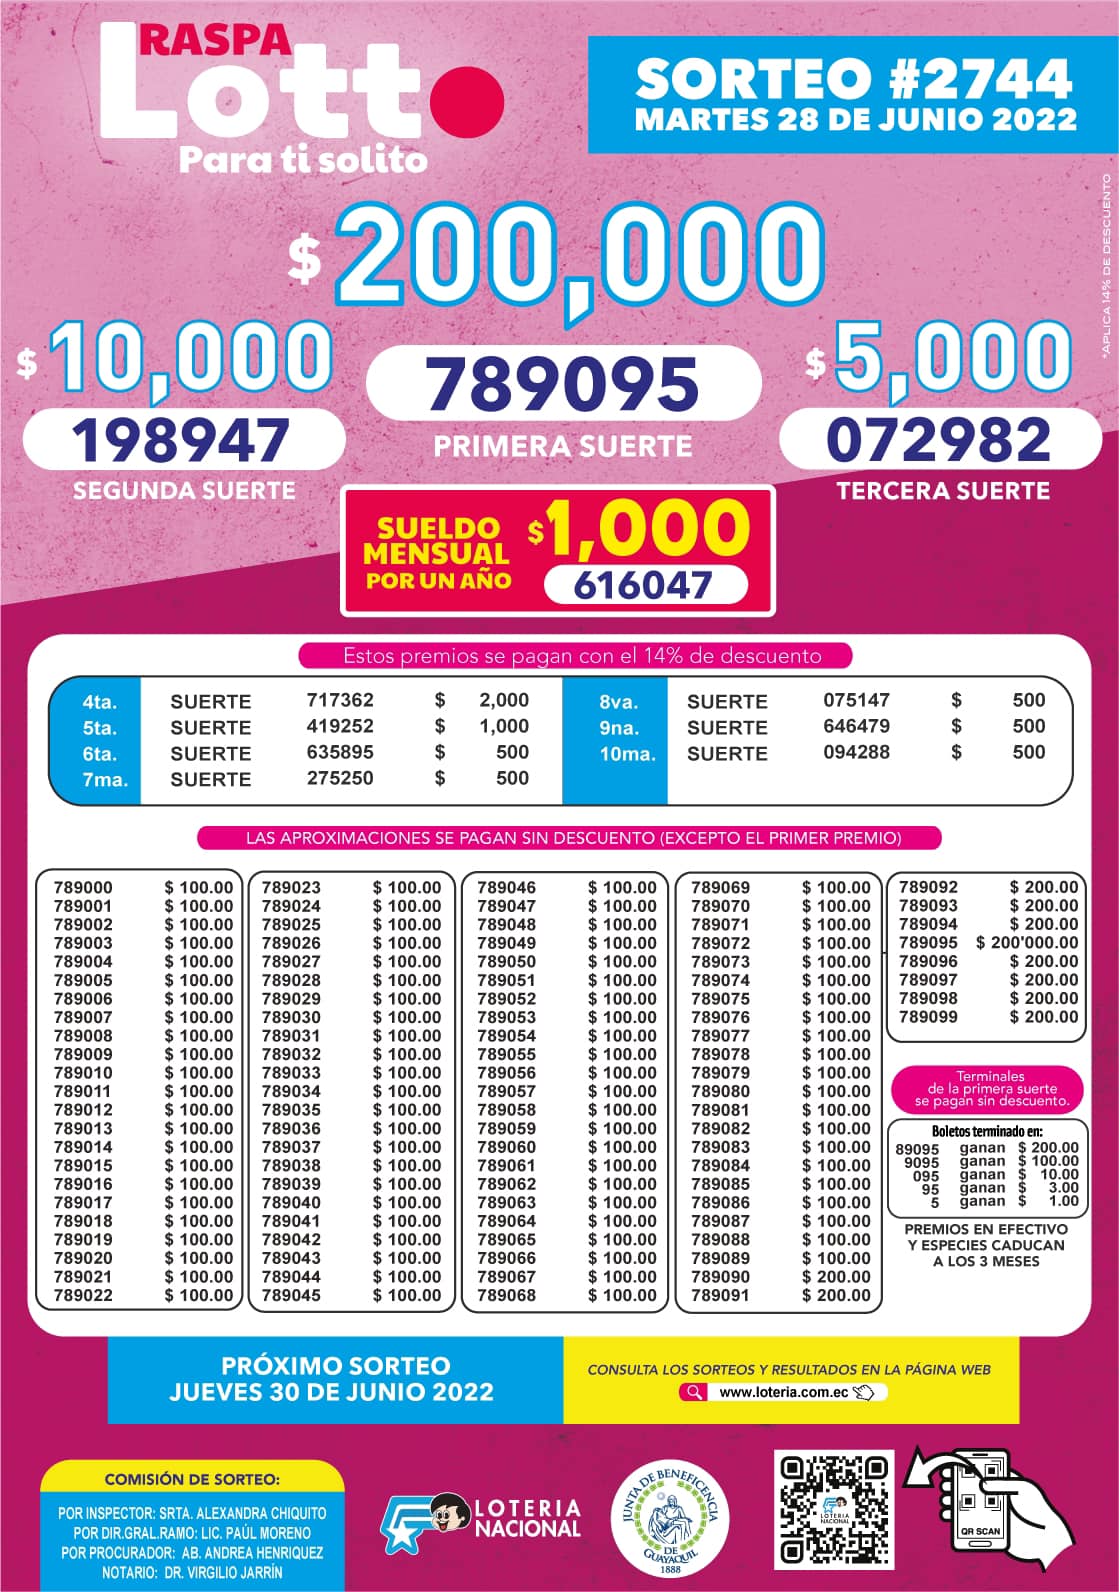 Lotto Sorteo 2744 Resultados de la Lotería Nacional AYER Martes 28 de